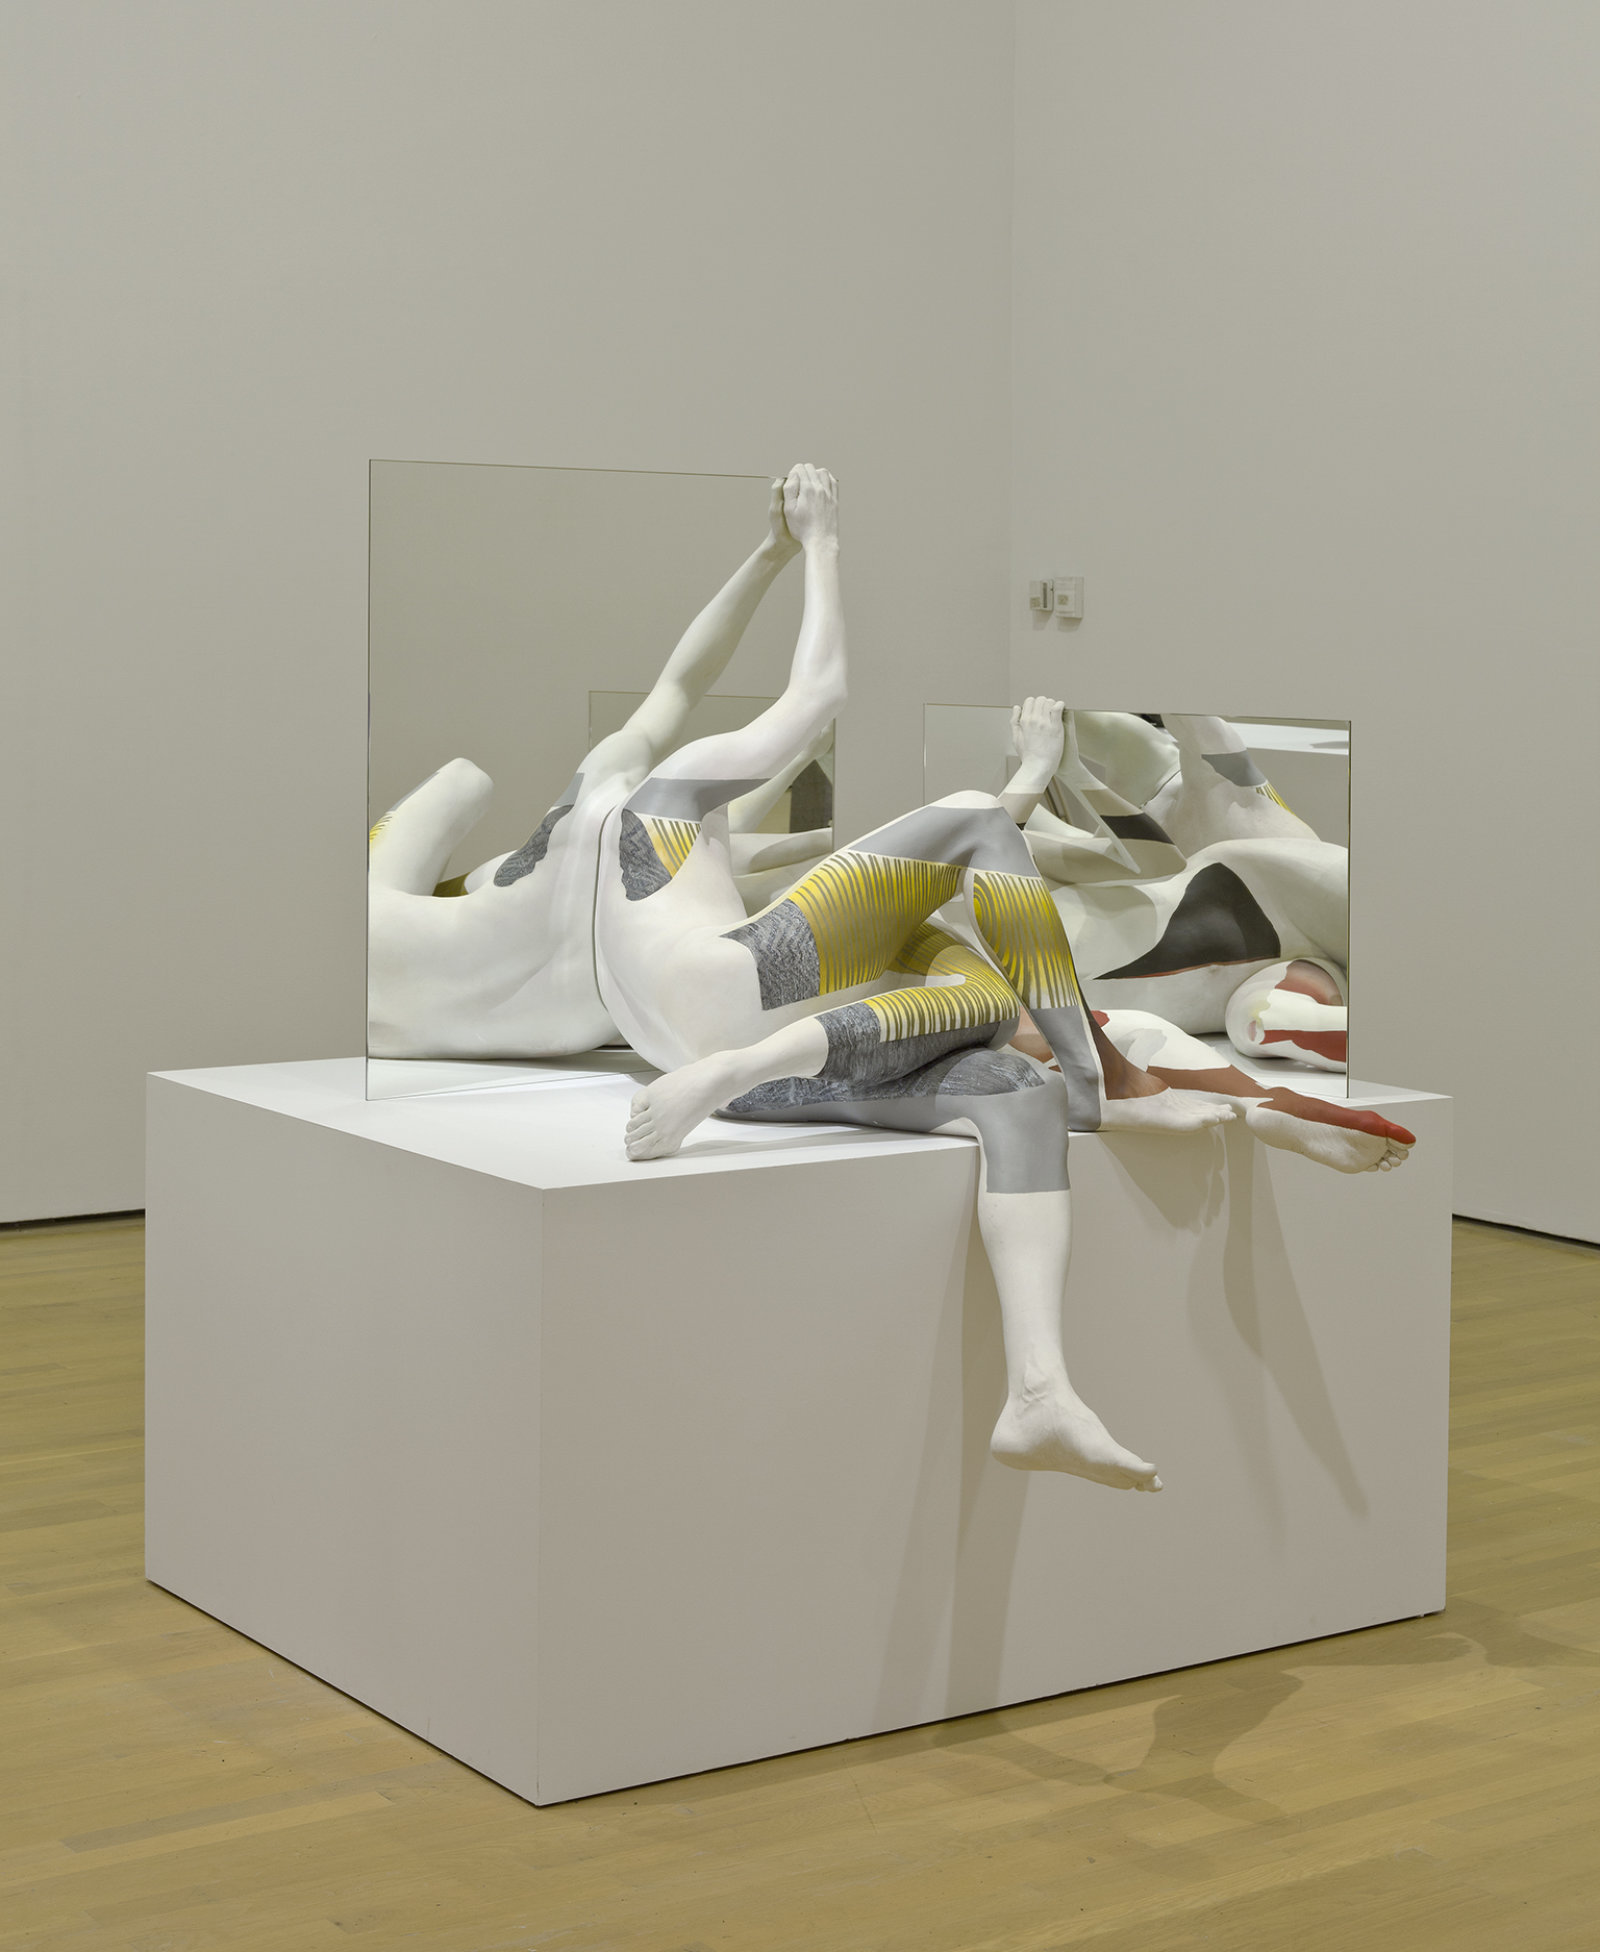 Valérie Blass, Dans la position très singulière qui est la mienn, 2012, plaster, mirror, pigment, wood, 66 x 63 x 61 in. (168 x 160 x 155 cm)